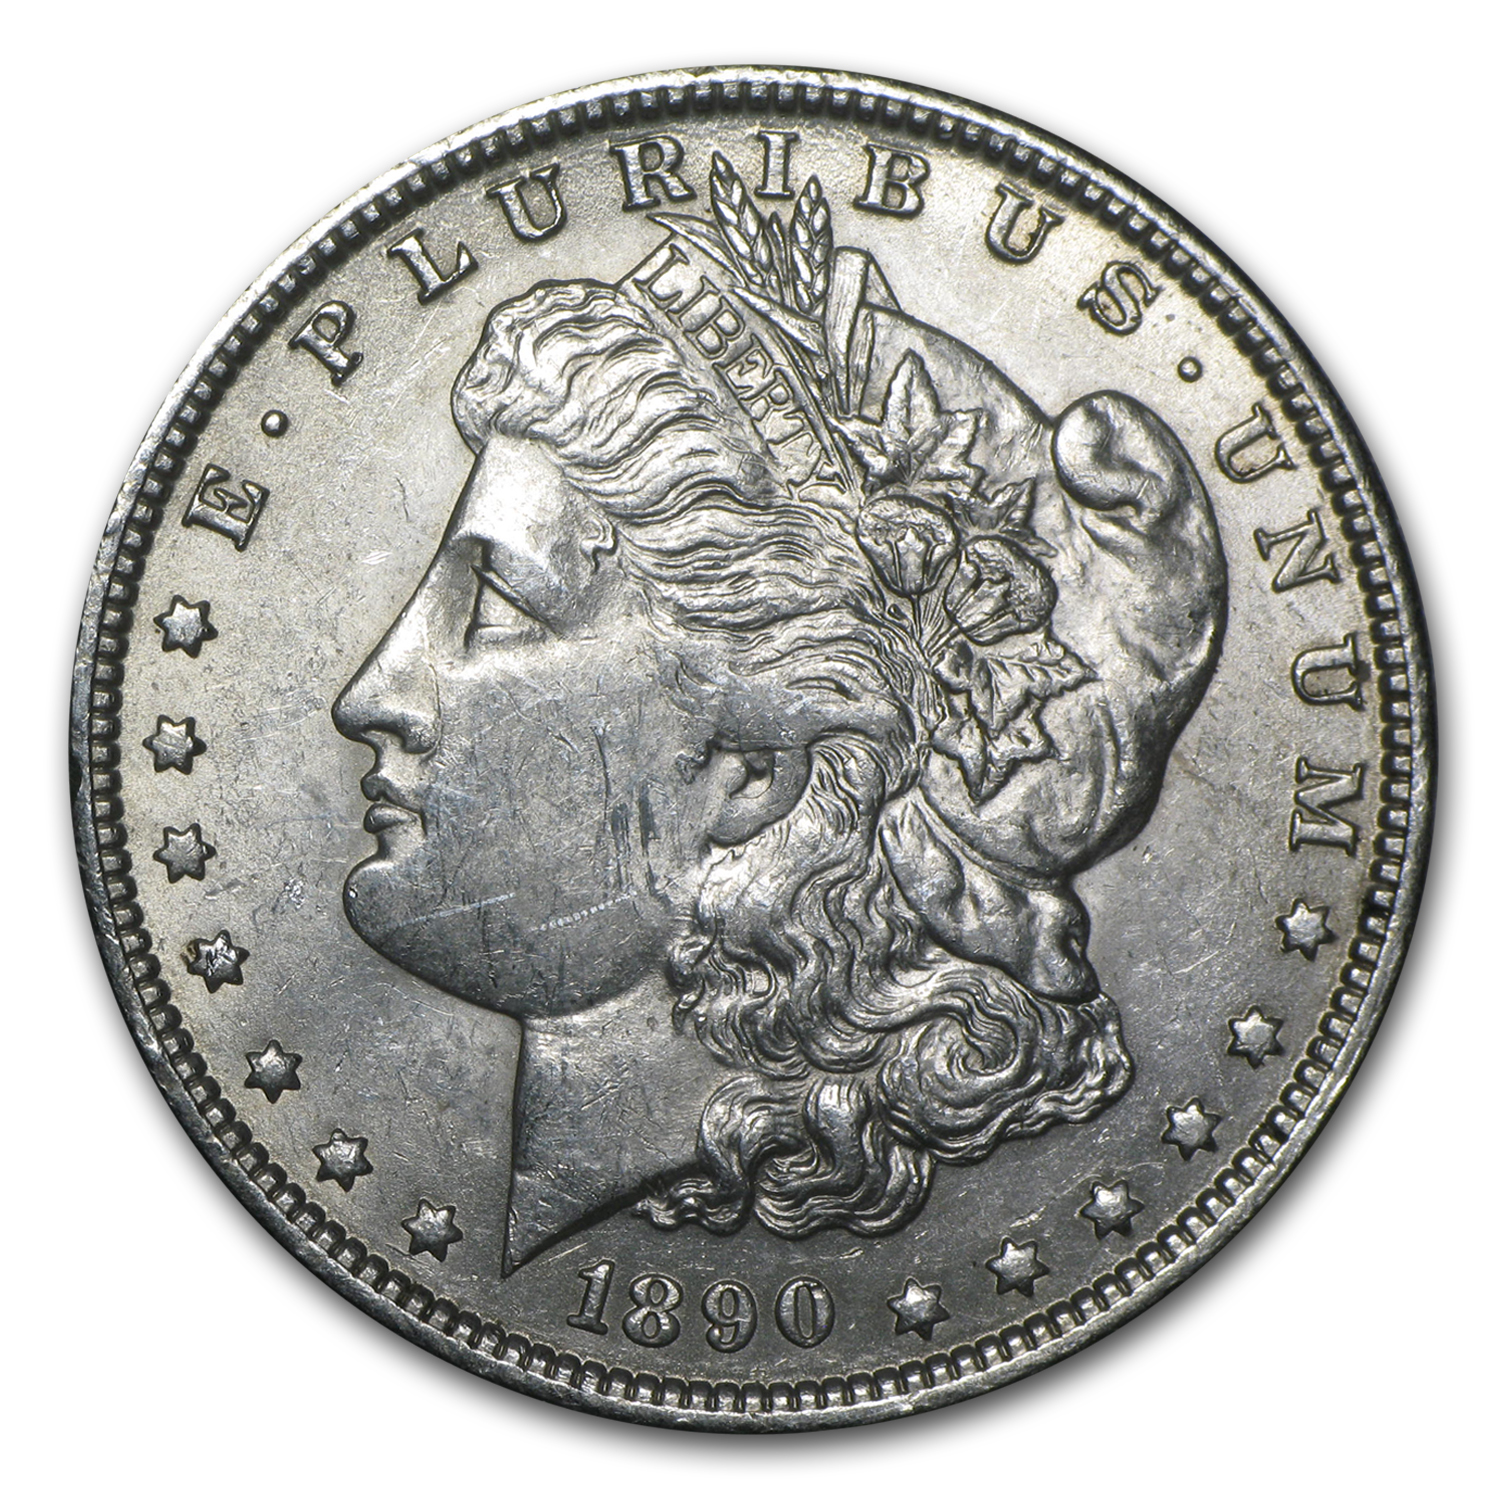 Buy 1890-O Morgan Dollar AU